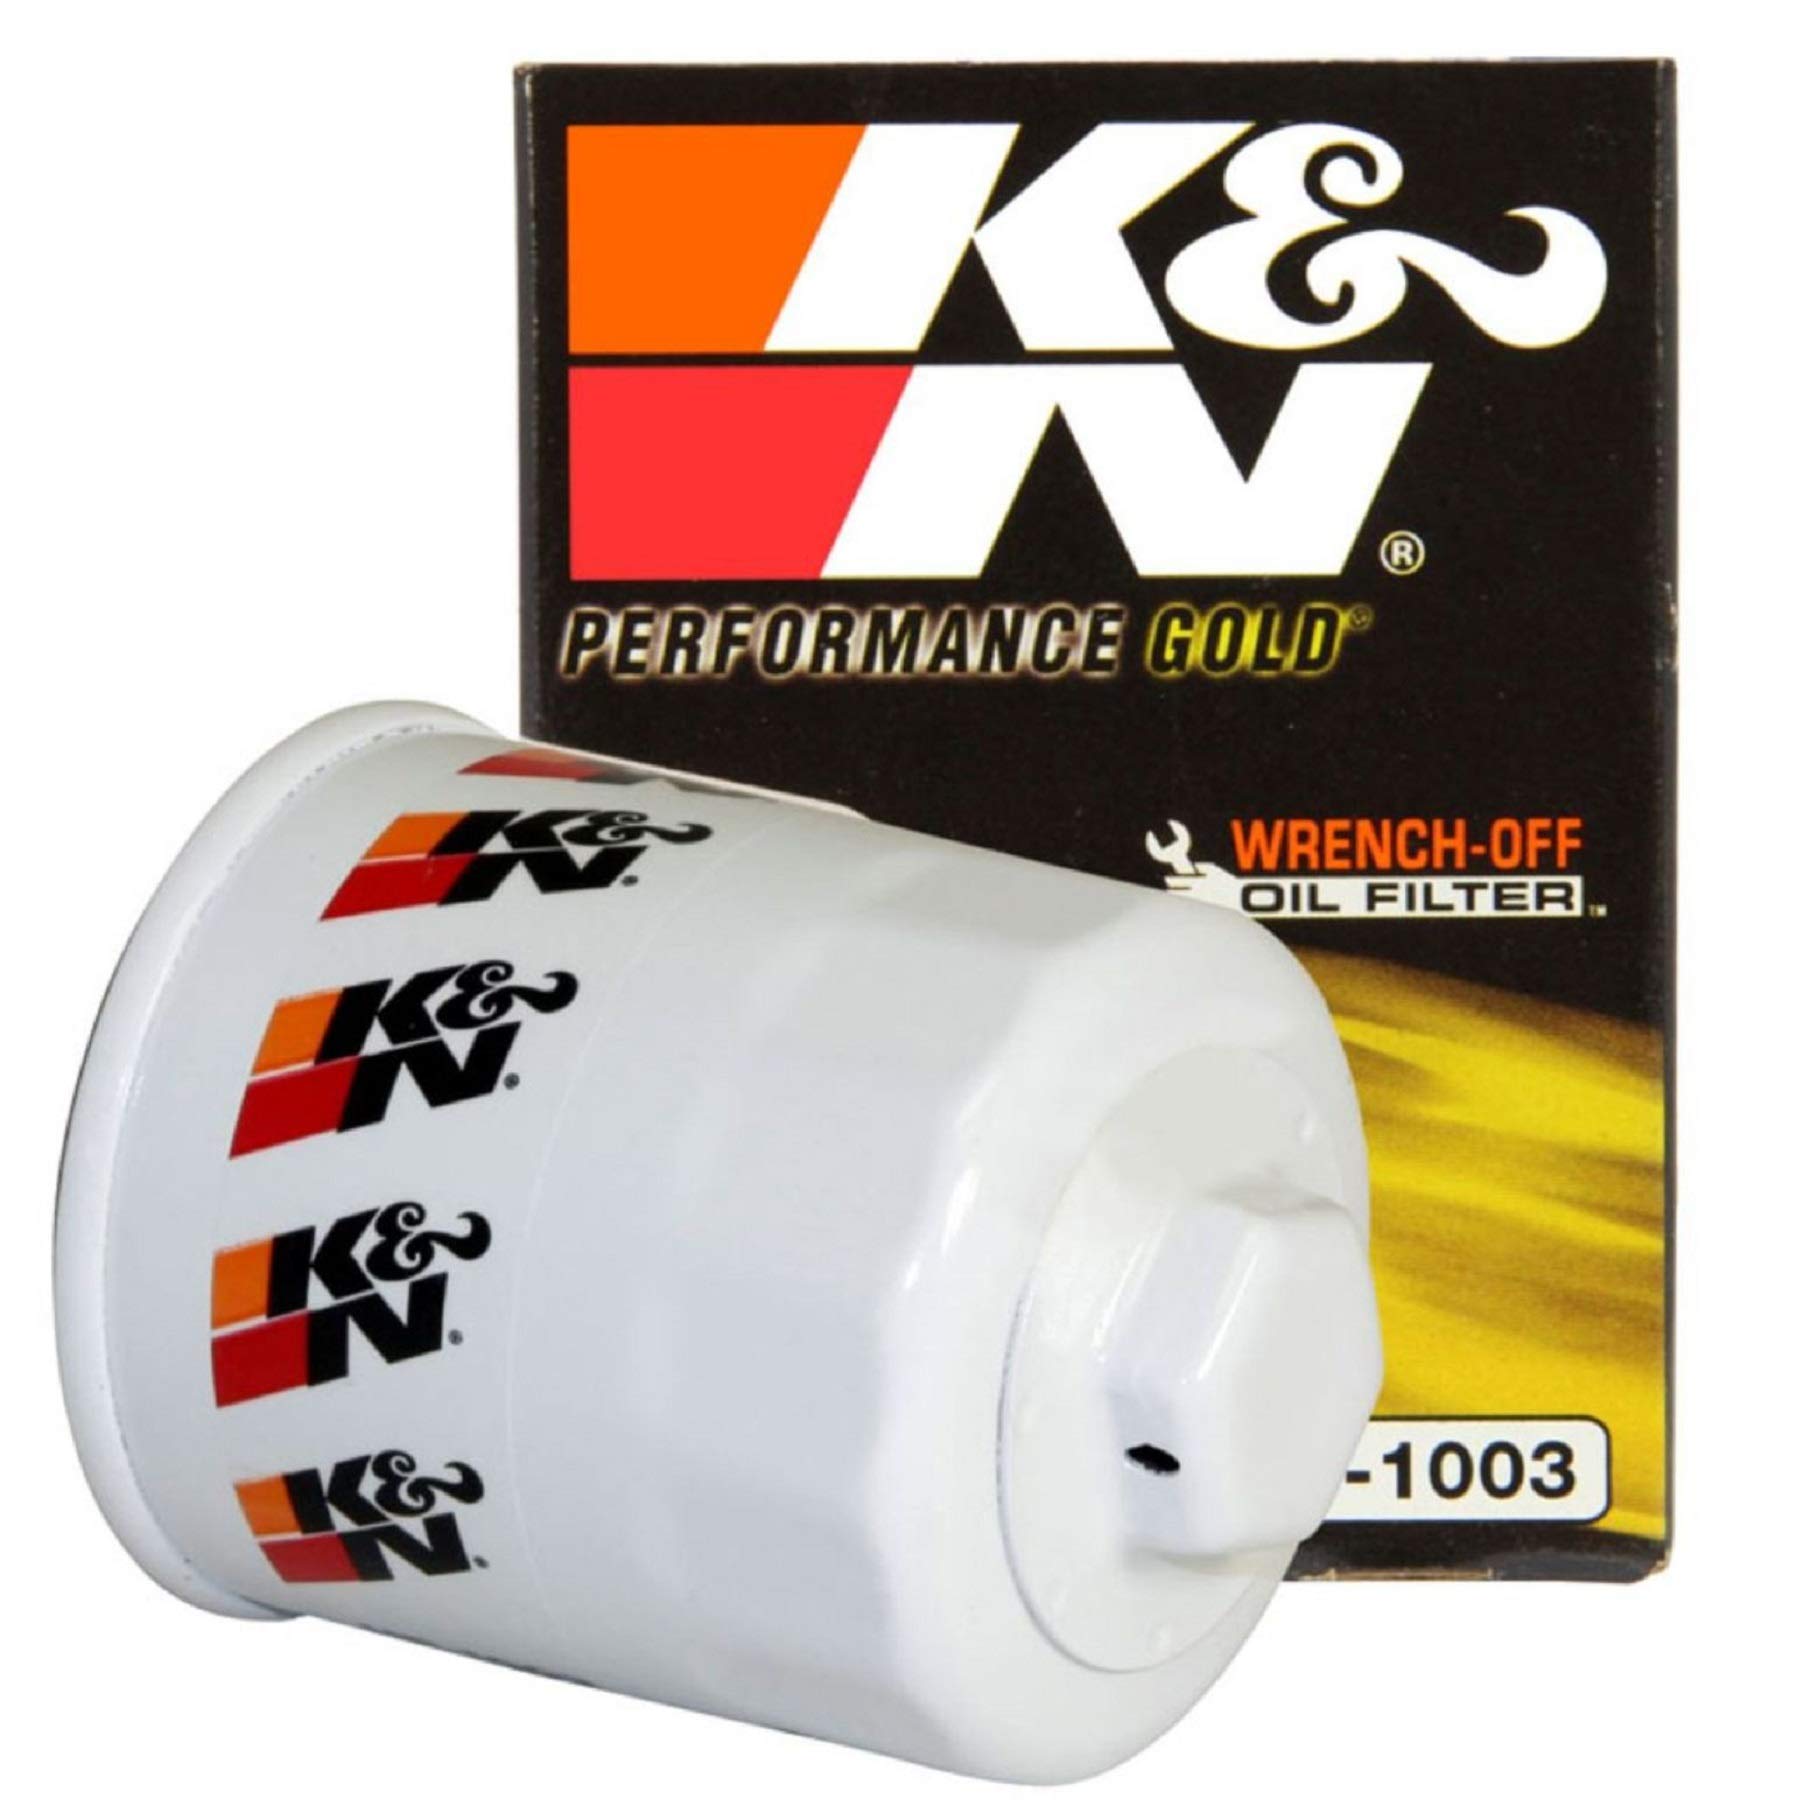 K&N Ölfilter - Patrone 68x84mm kompatibel mit Toyota, Scion, Suzuki, Pontiac, Chevrolet, Nissan, Daihatsu (HP-1003), weiß von K&N